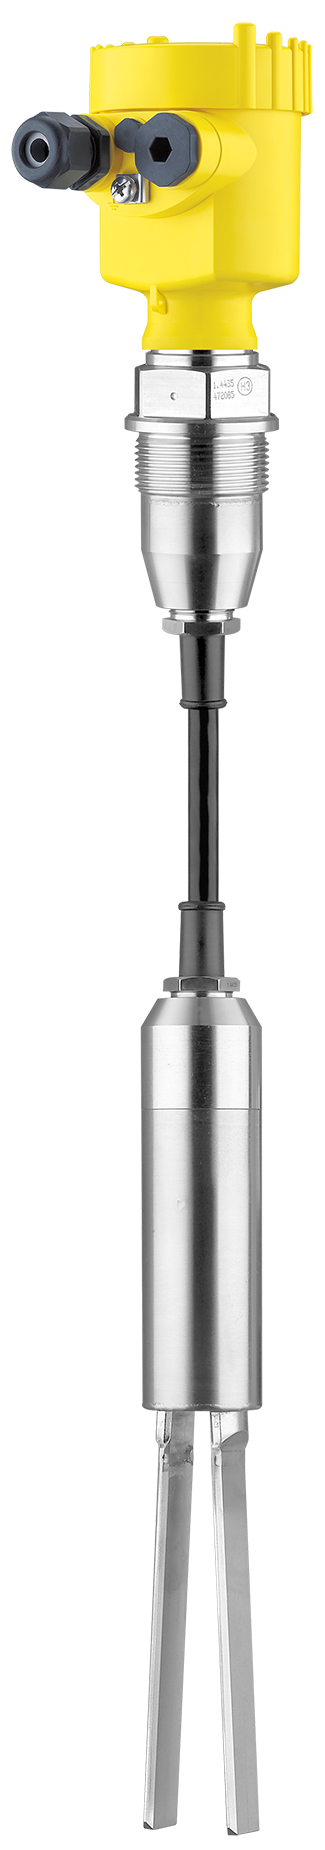 VEGAWAVE 62 Vibrationsgrenzschalter für pulverförmige Schüttgüter mit Tragkabel